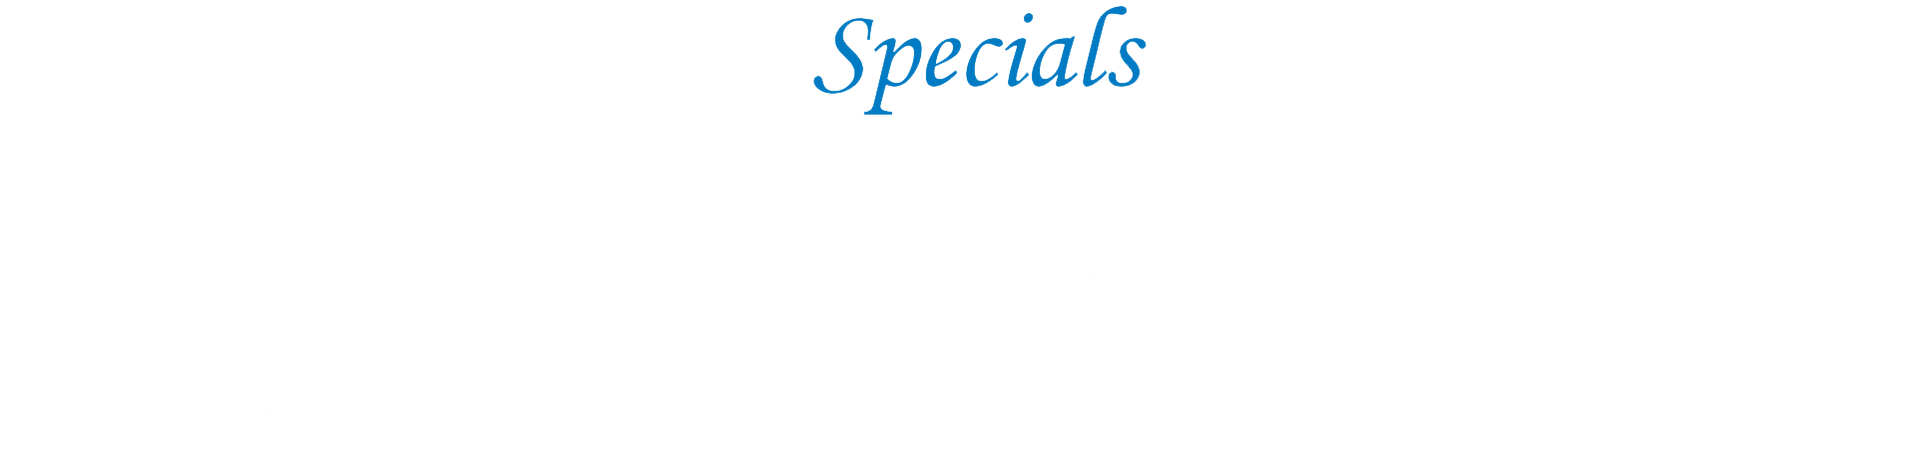 specials menu